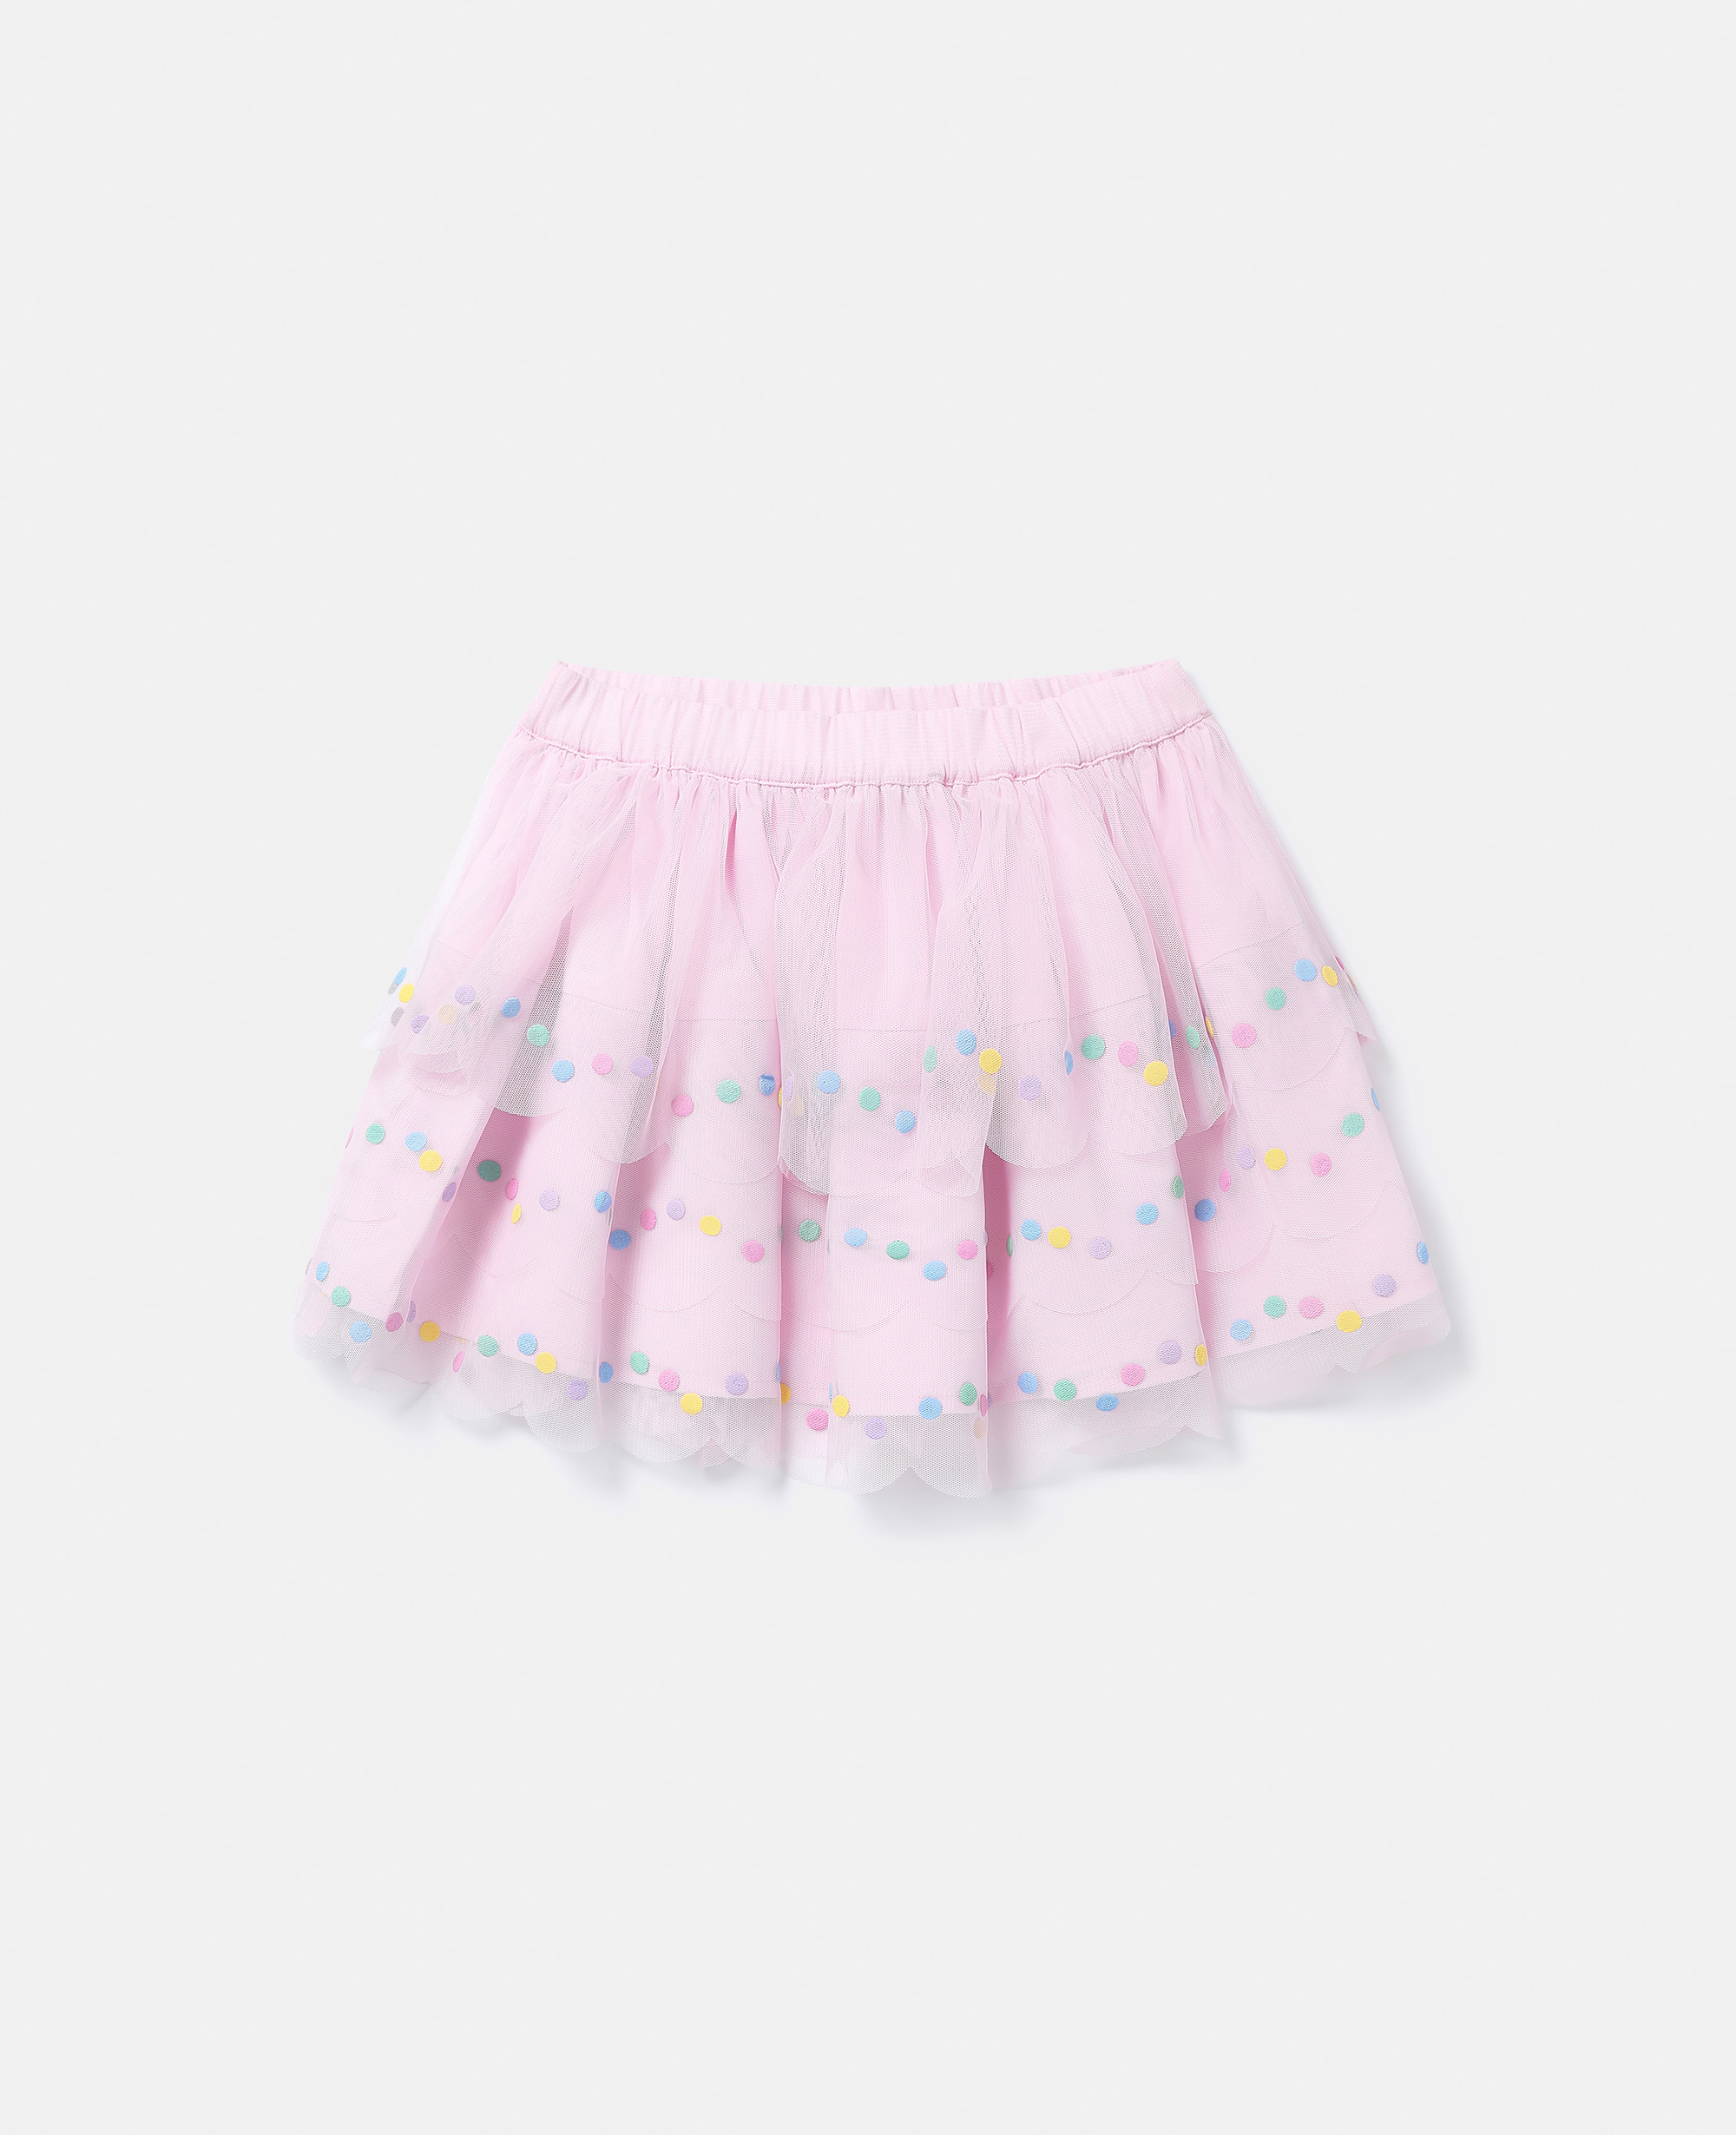 Stella Mccartney Kids' Confetti Dot Tutu Skirt In Wisteria Pink